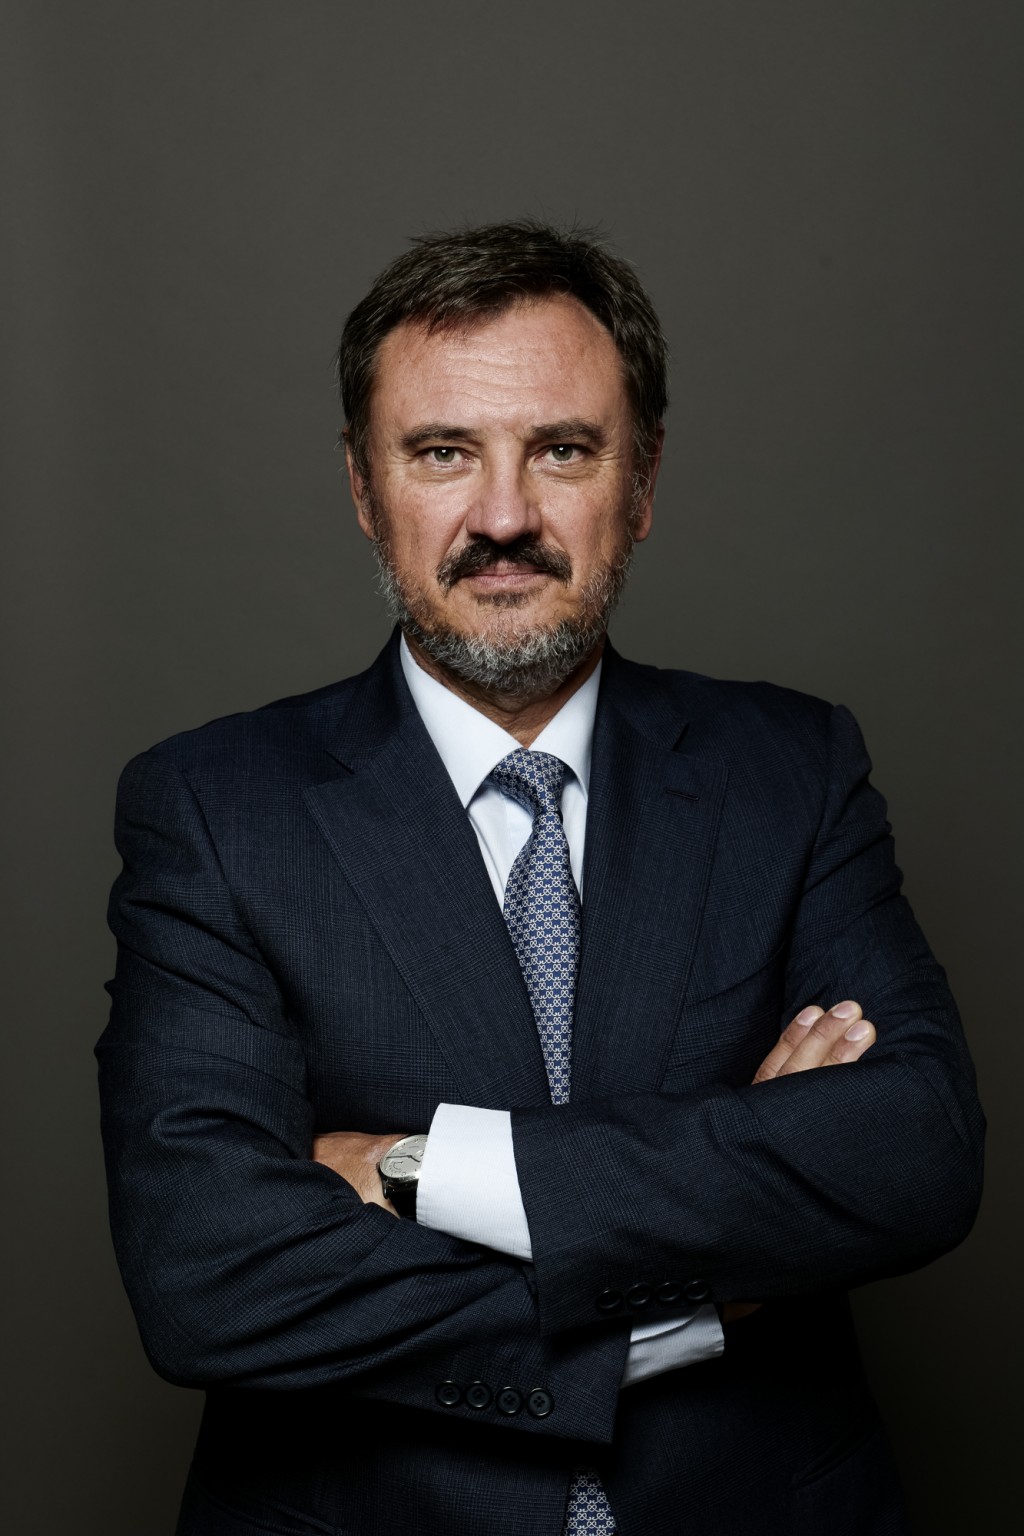 Ông Jaime Anchùstegui bắt đầu làm việc tại Tập đoàn Generali từ năm 1993 và được bổ nhiệm là Tổng Giám đốc Generali Quốc tế từ năm 2018